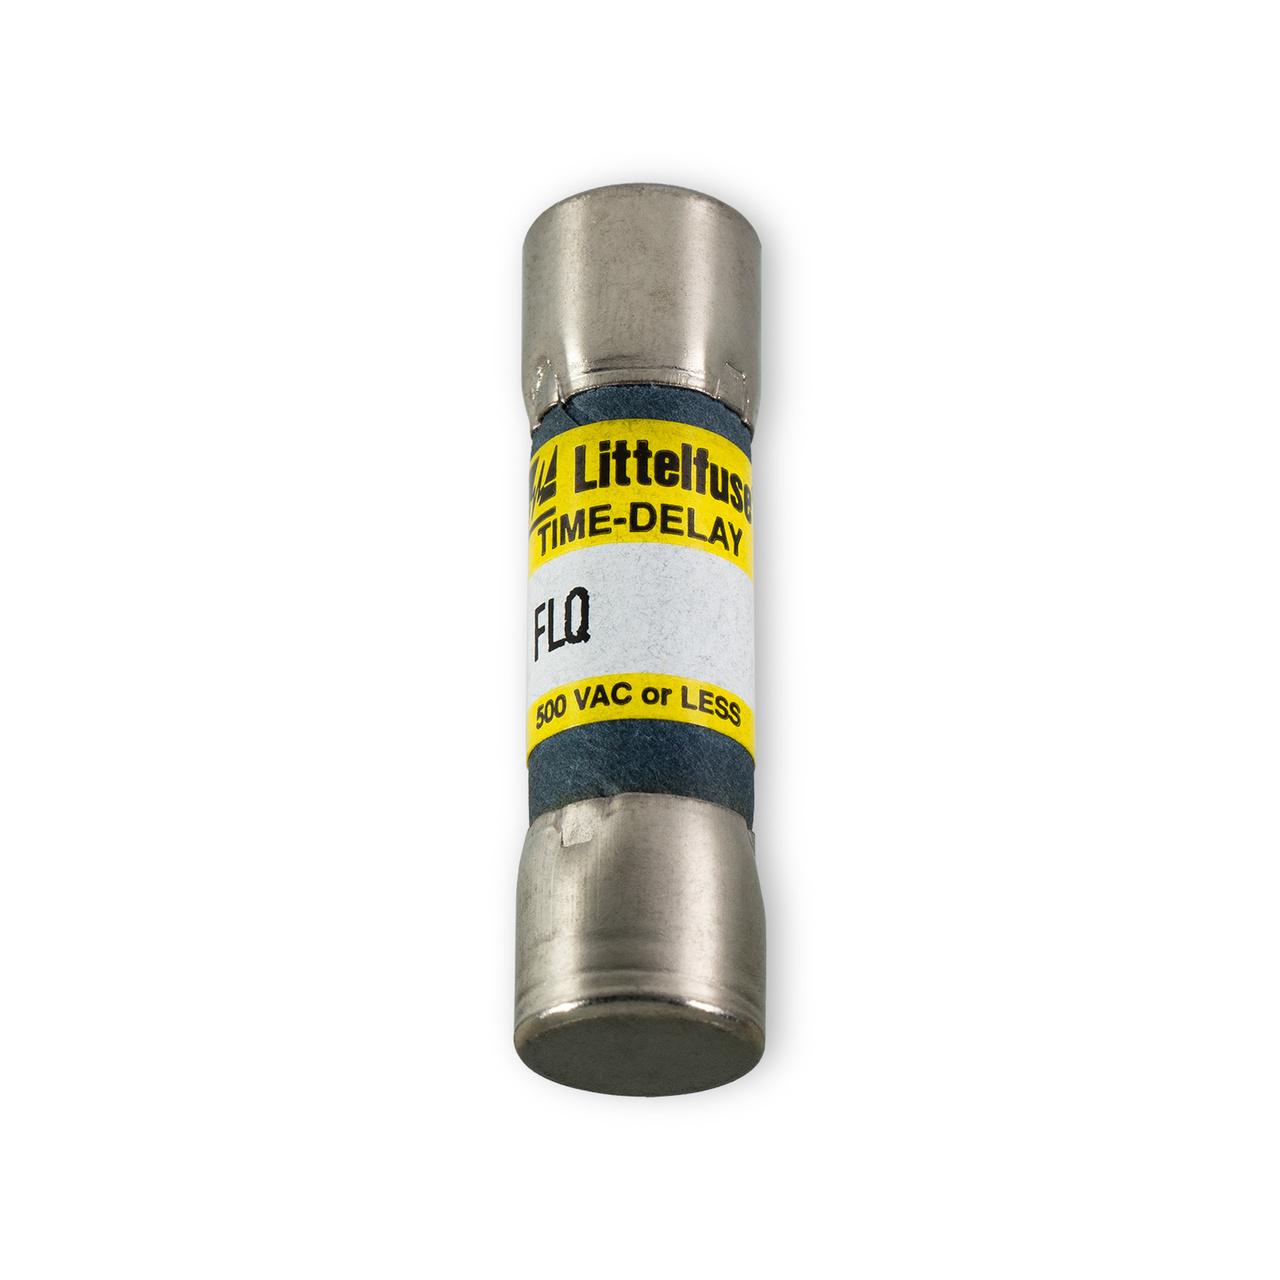 FLQ-004 - Littelfuse - Medium Voltage Fuse